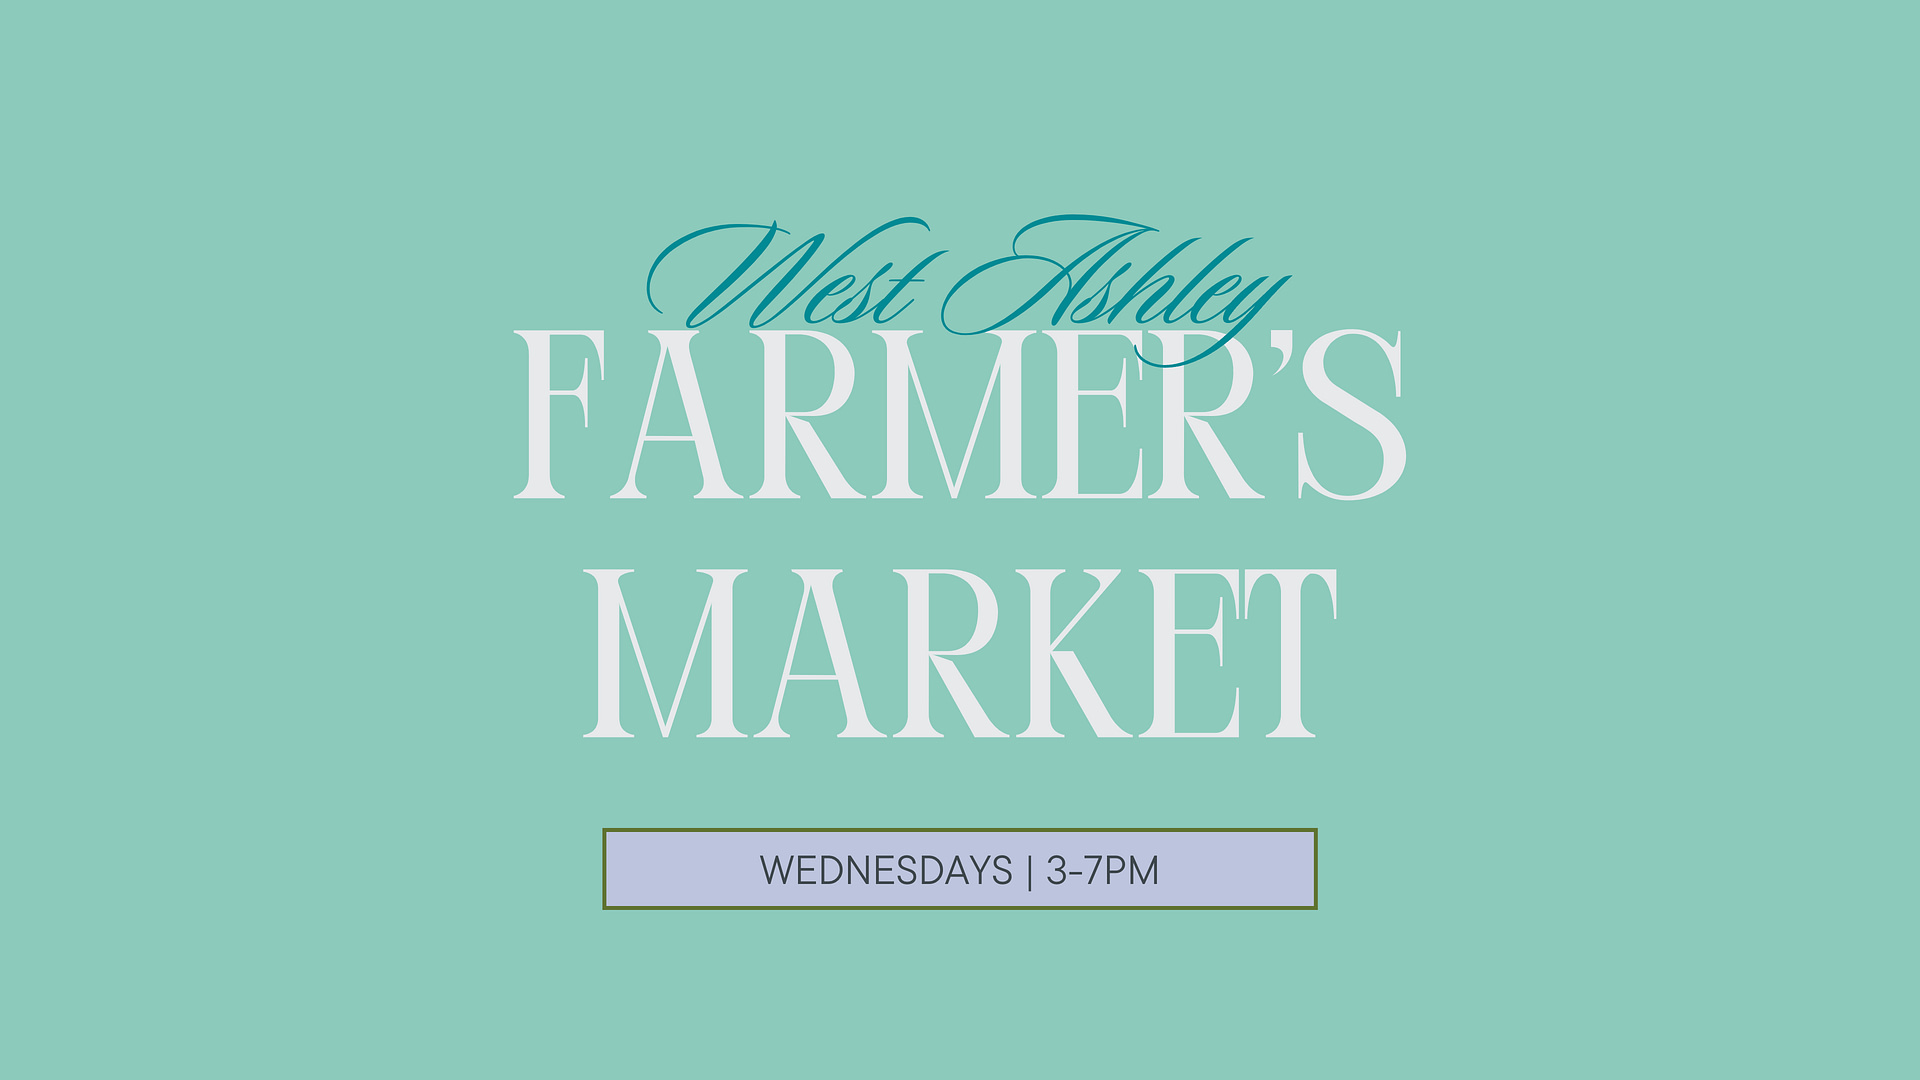 West Ashley Farmer’s Market